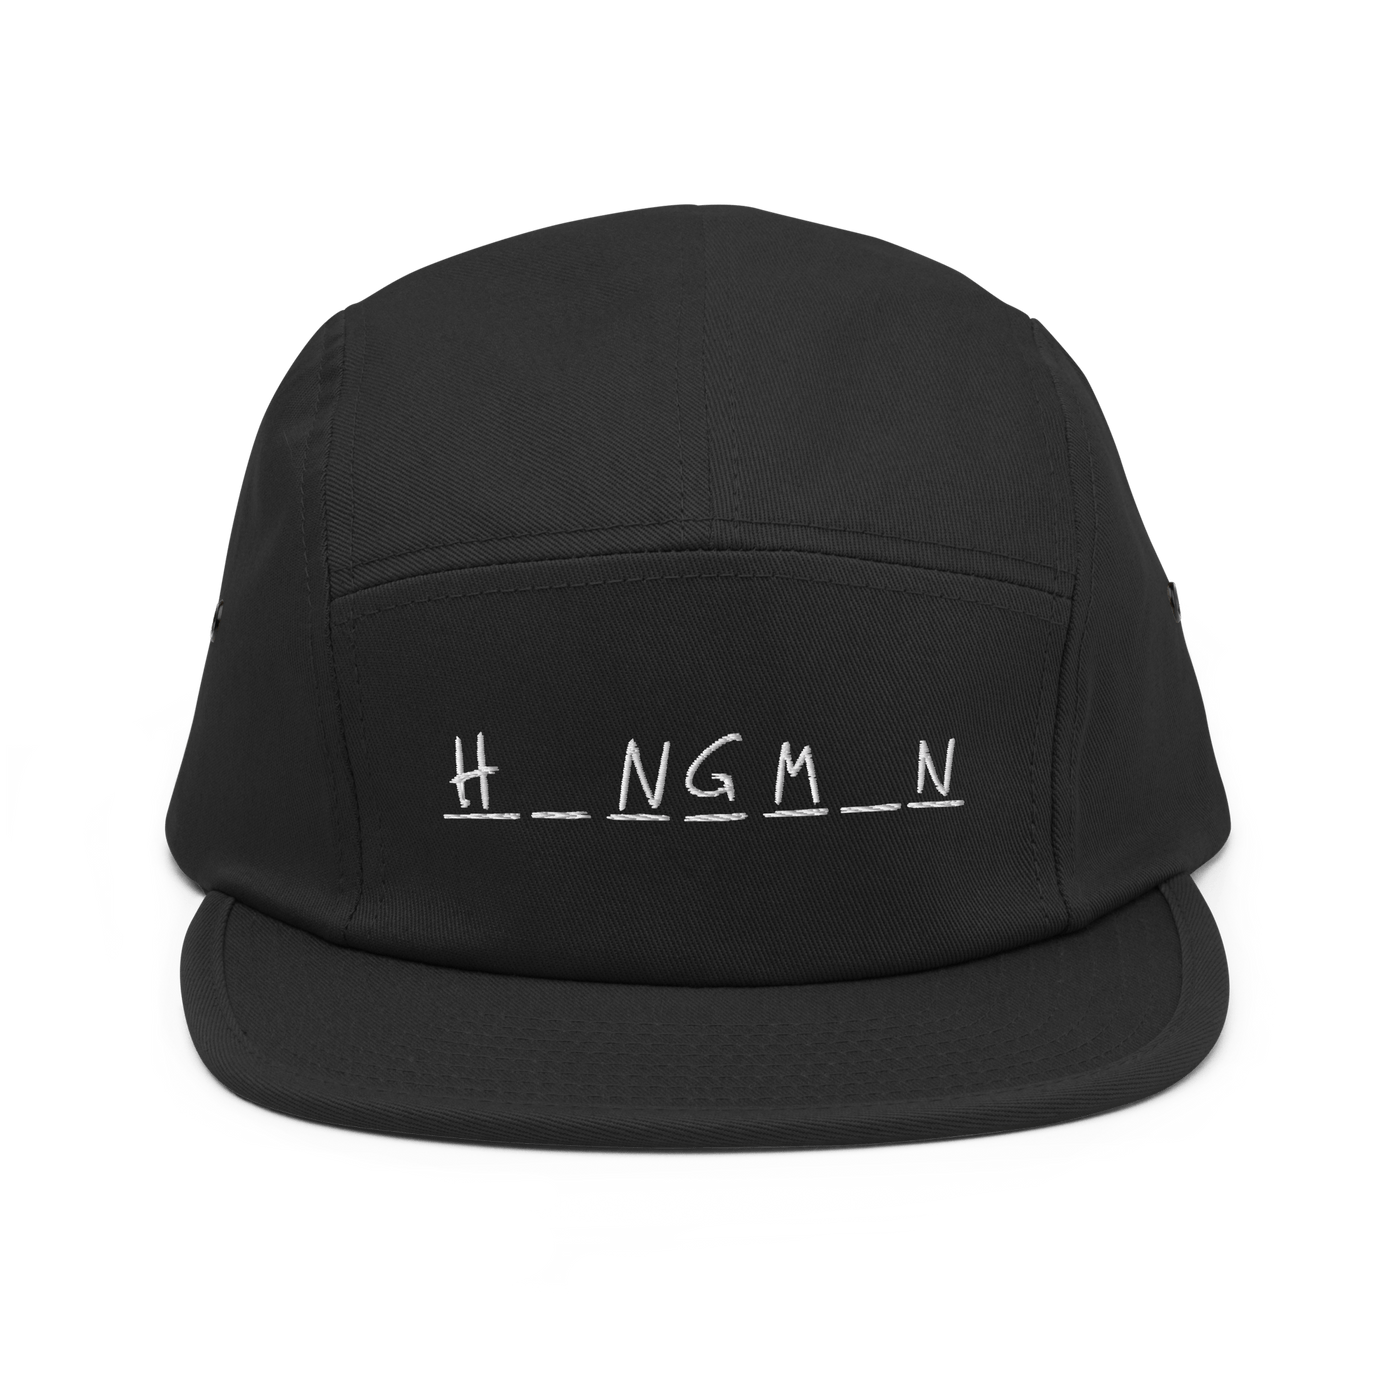 Hangman Five Panel Cap - Black - - Just Another Cap Store